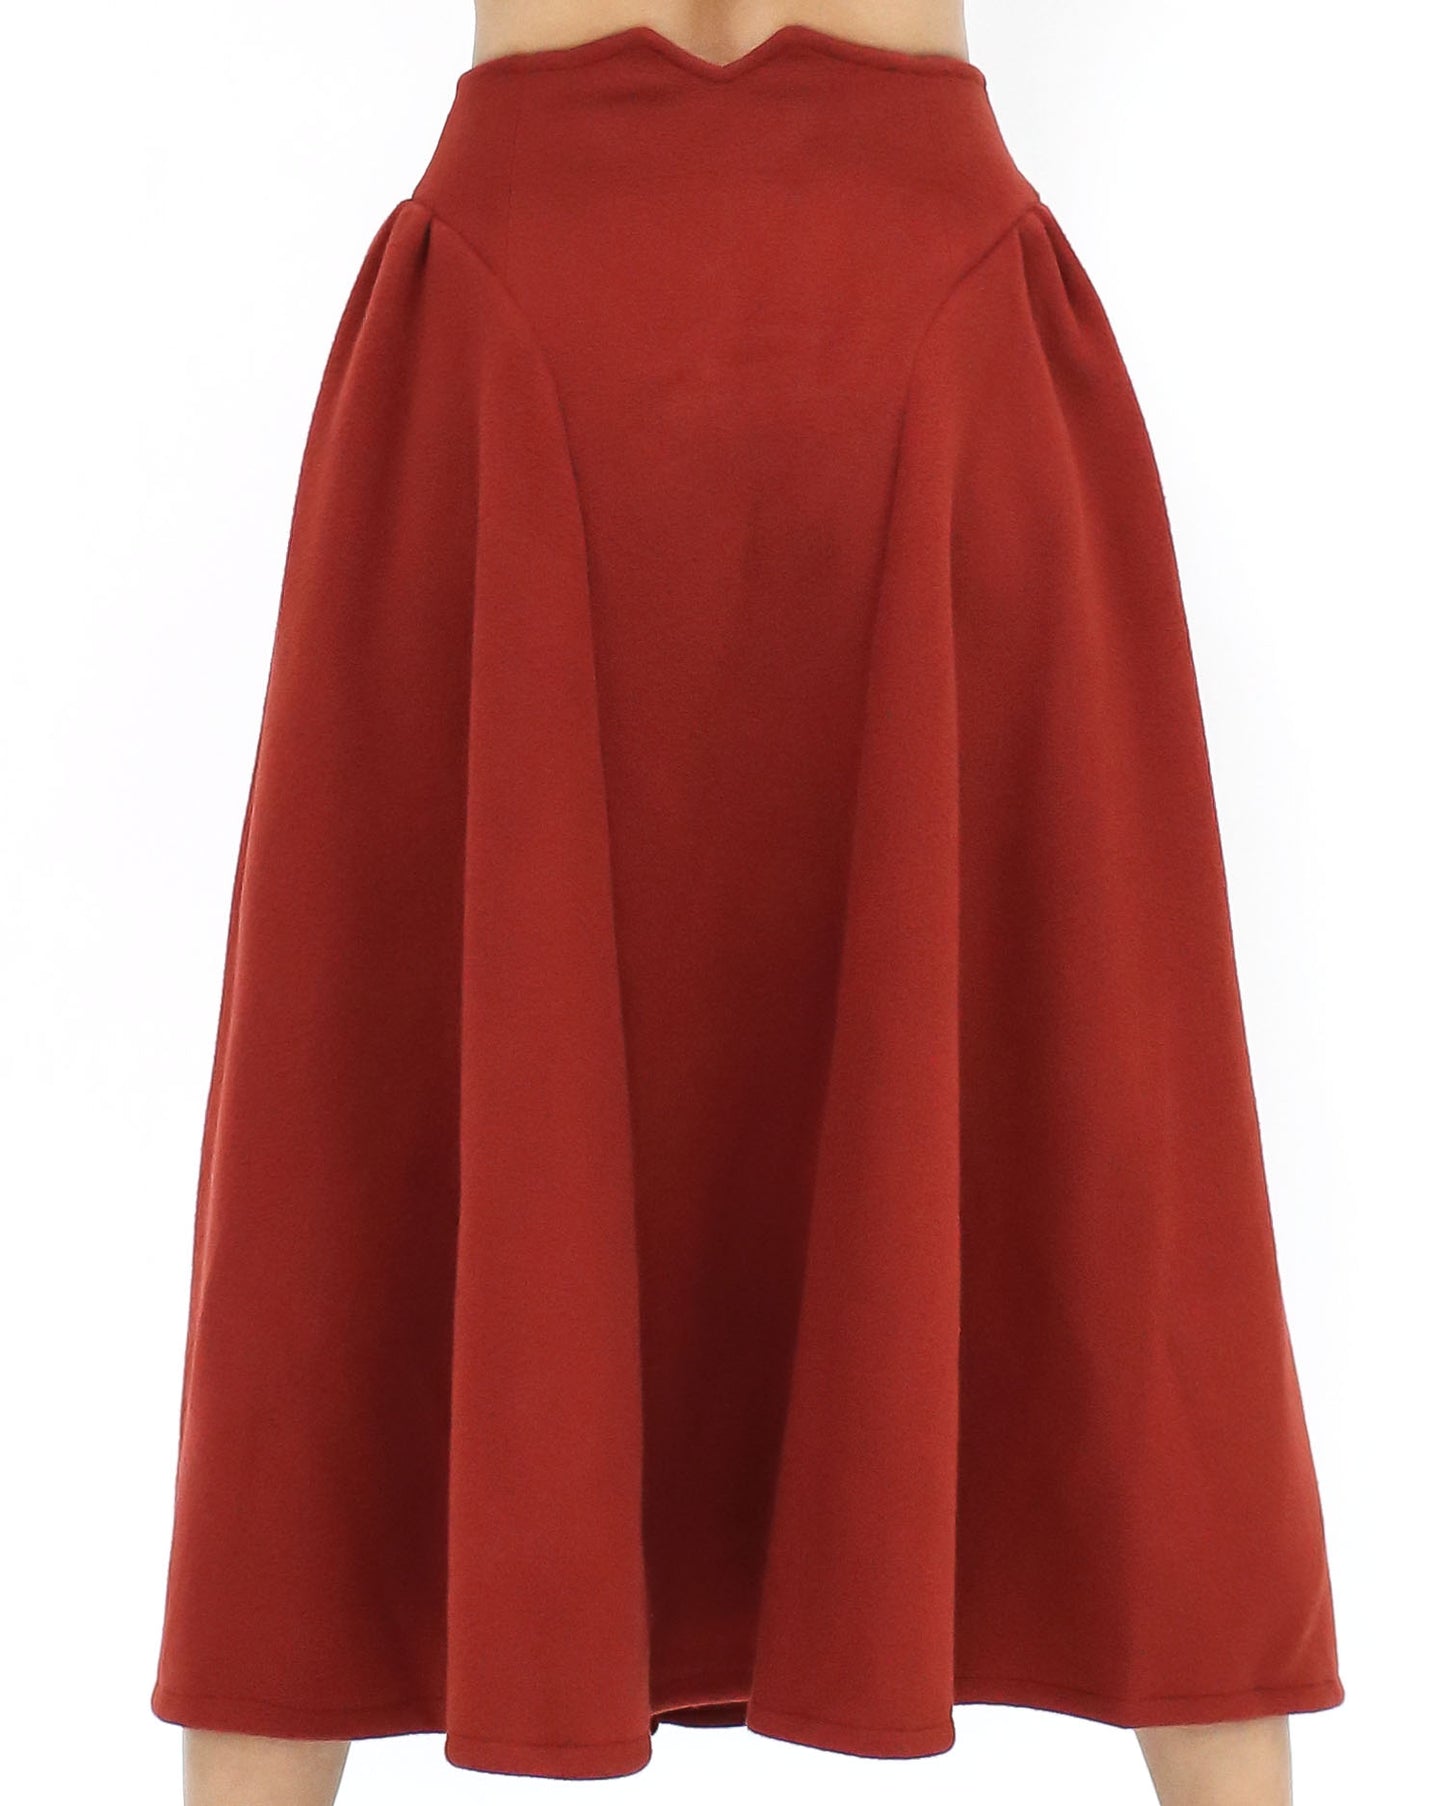 red wool blended flare skirt - S